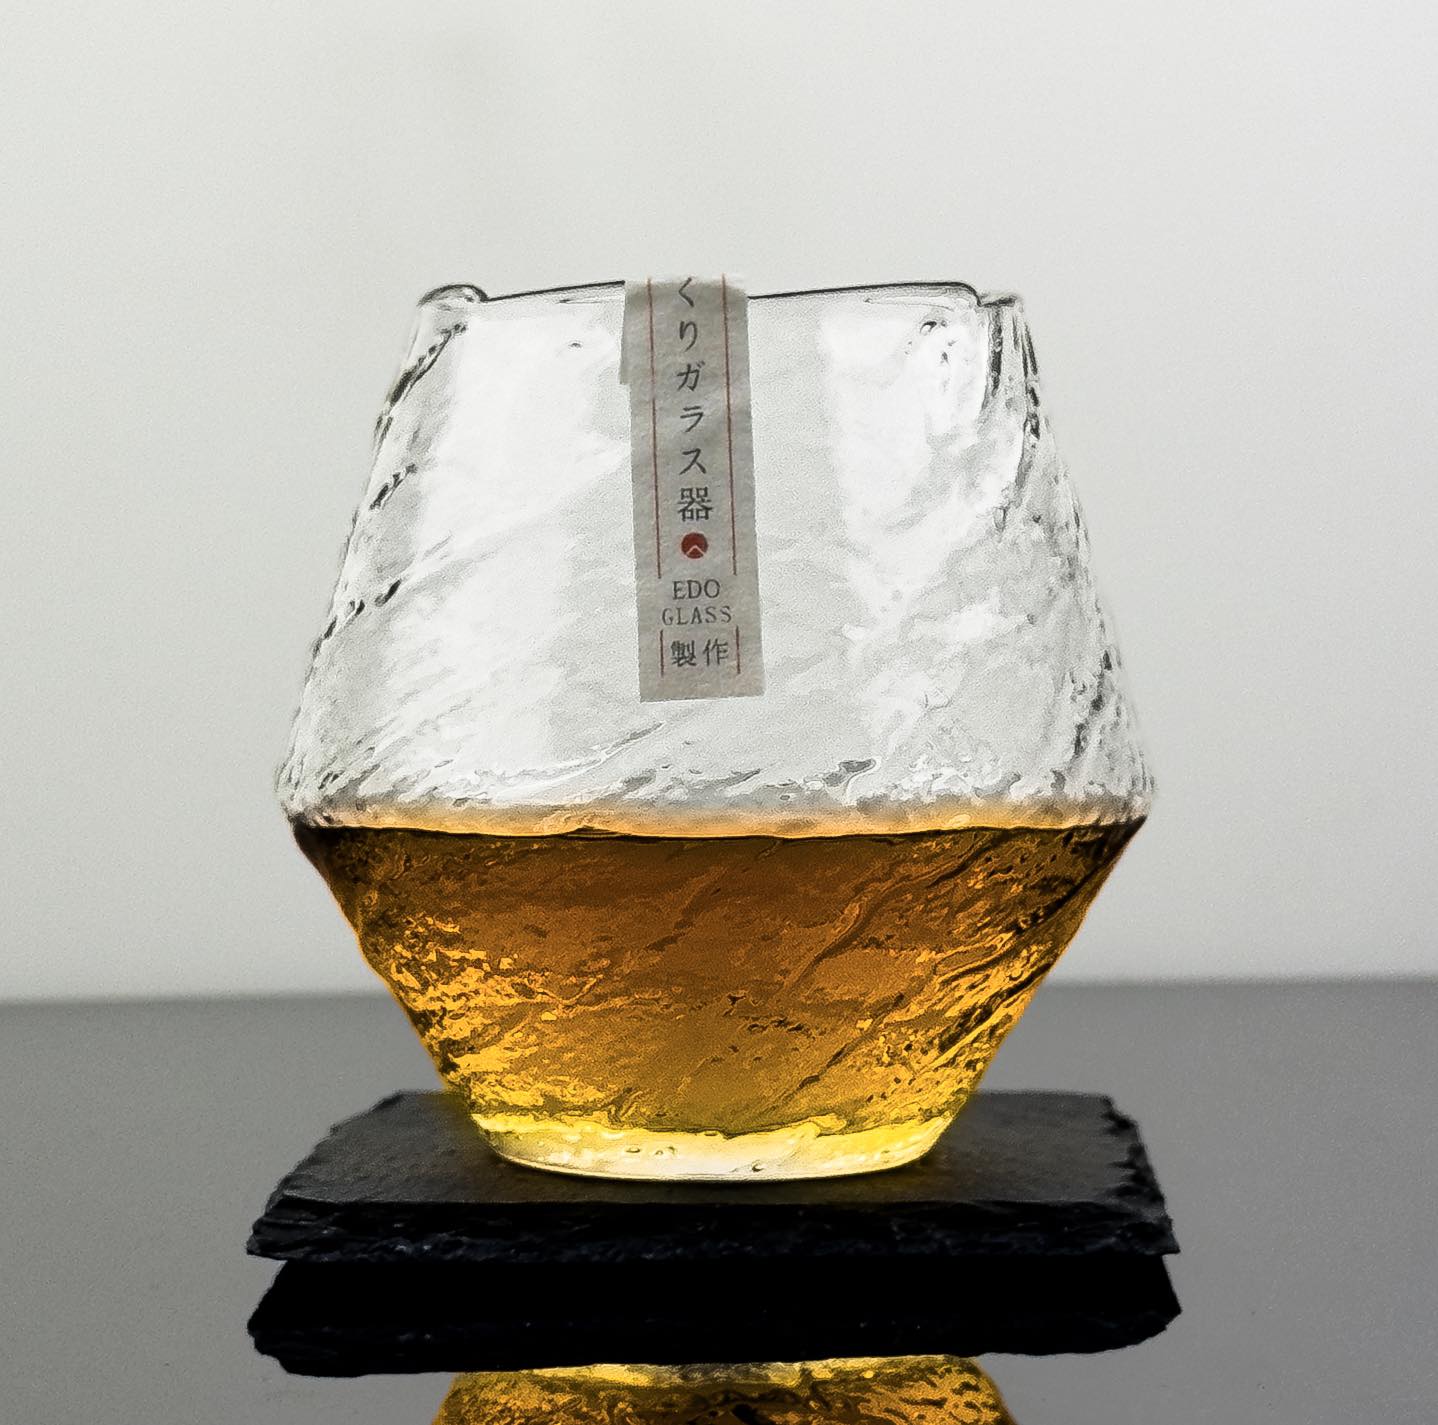 Japanese Snowflake Whisky Glass - Solkatt Designs 